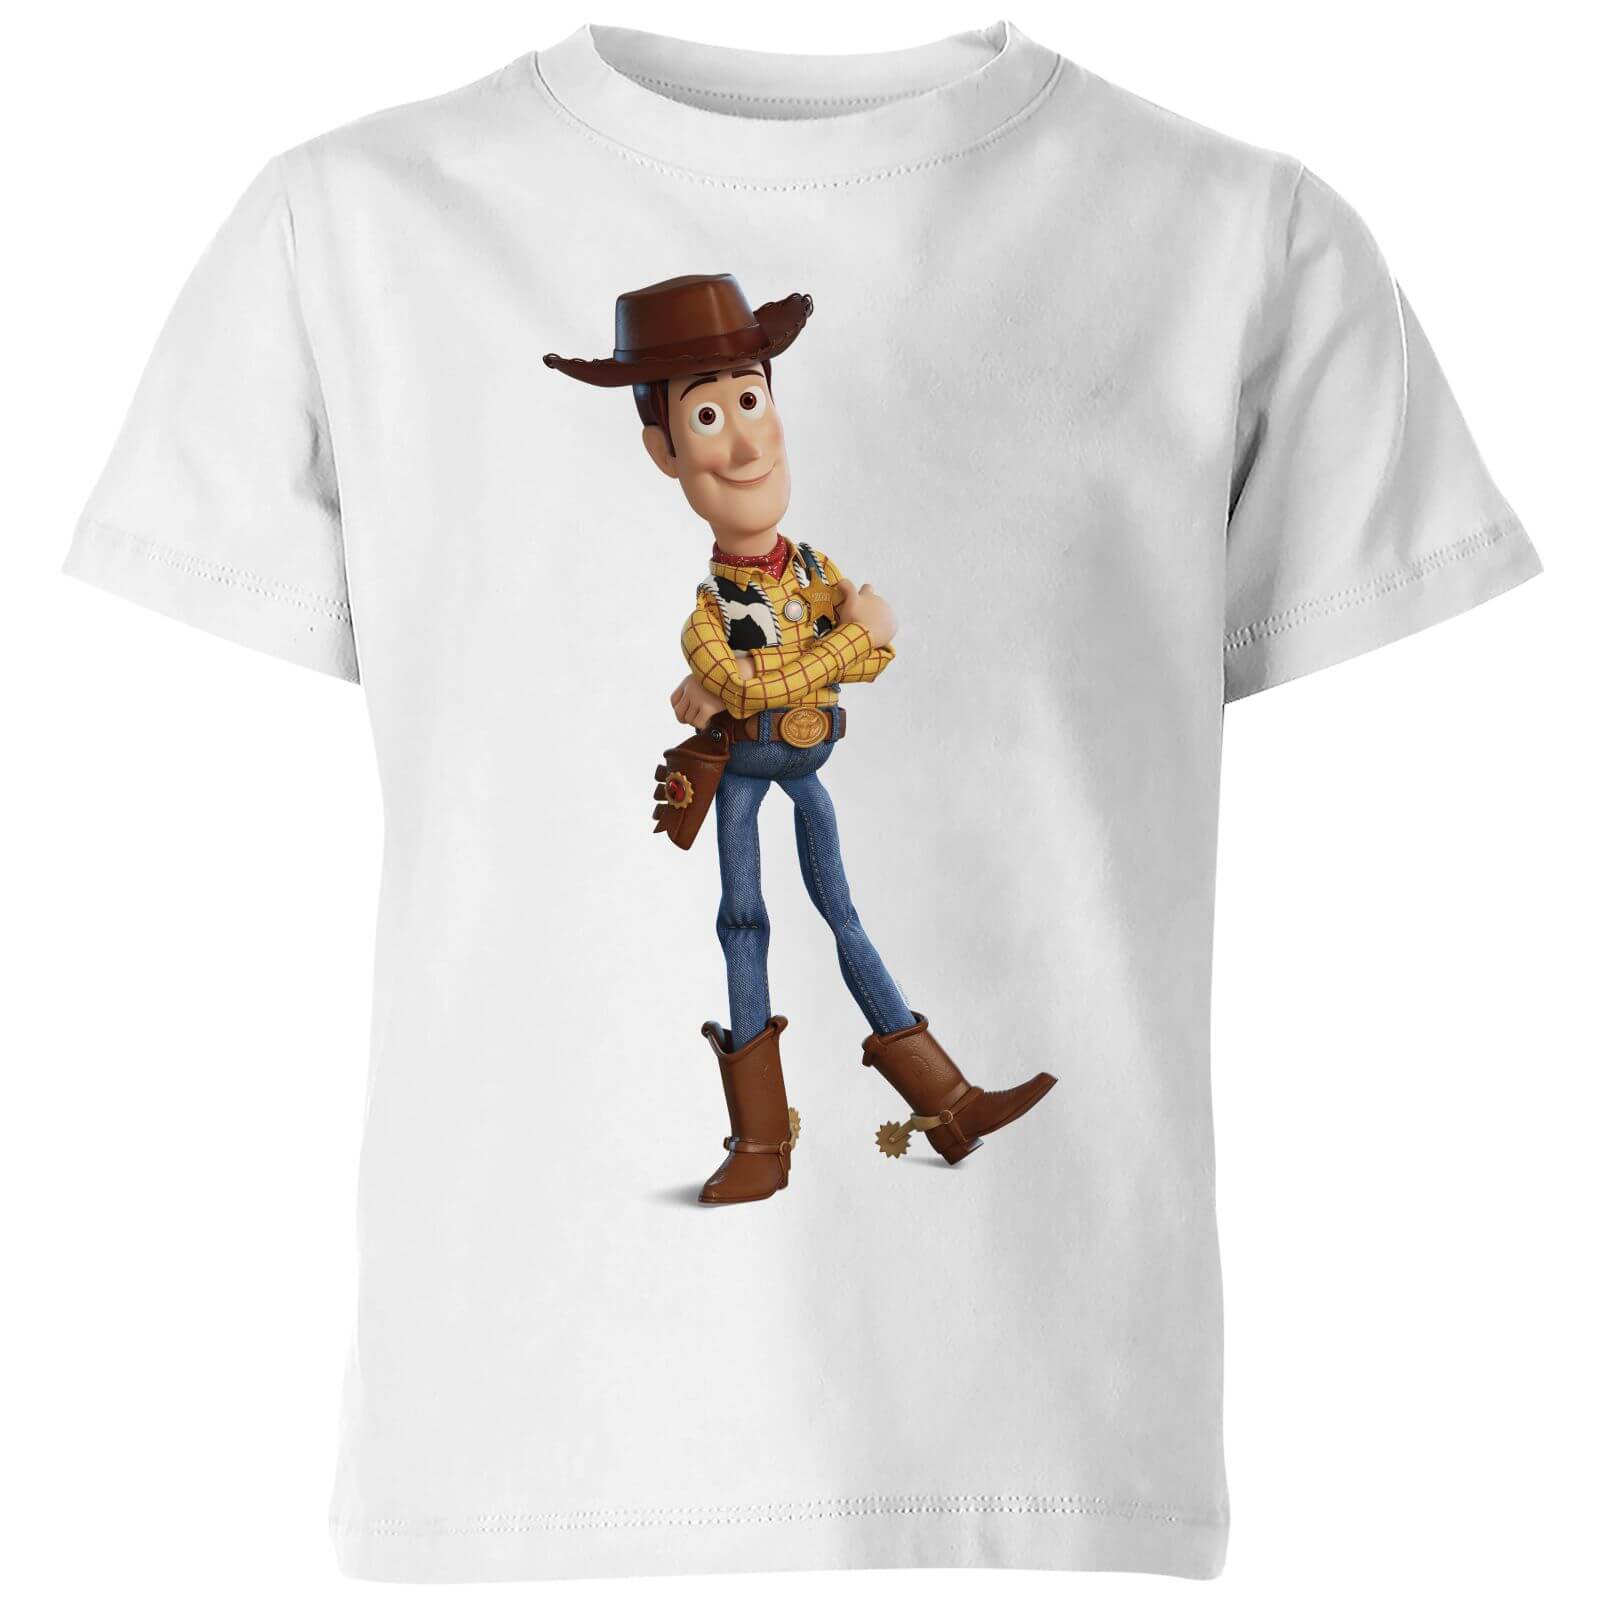 Toy Story 4 Woody Kids' T-Shirt - White - 7-8 Years - White